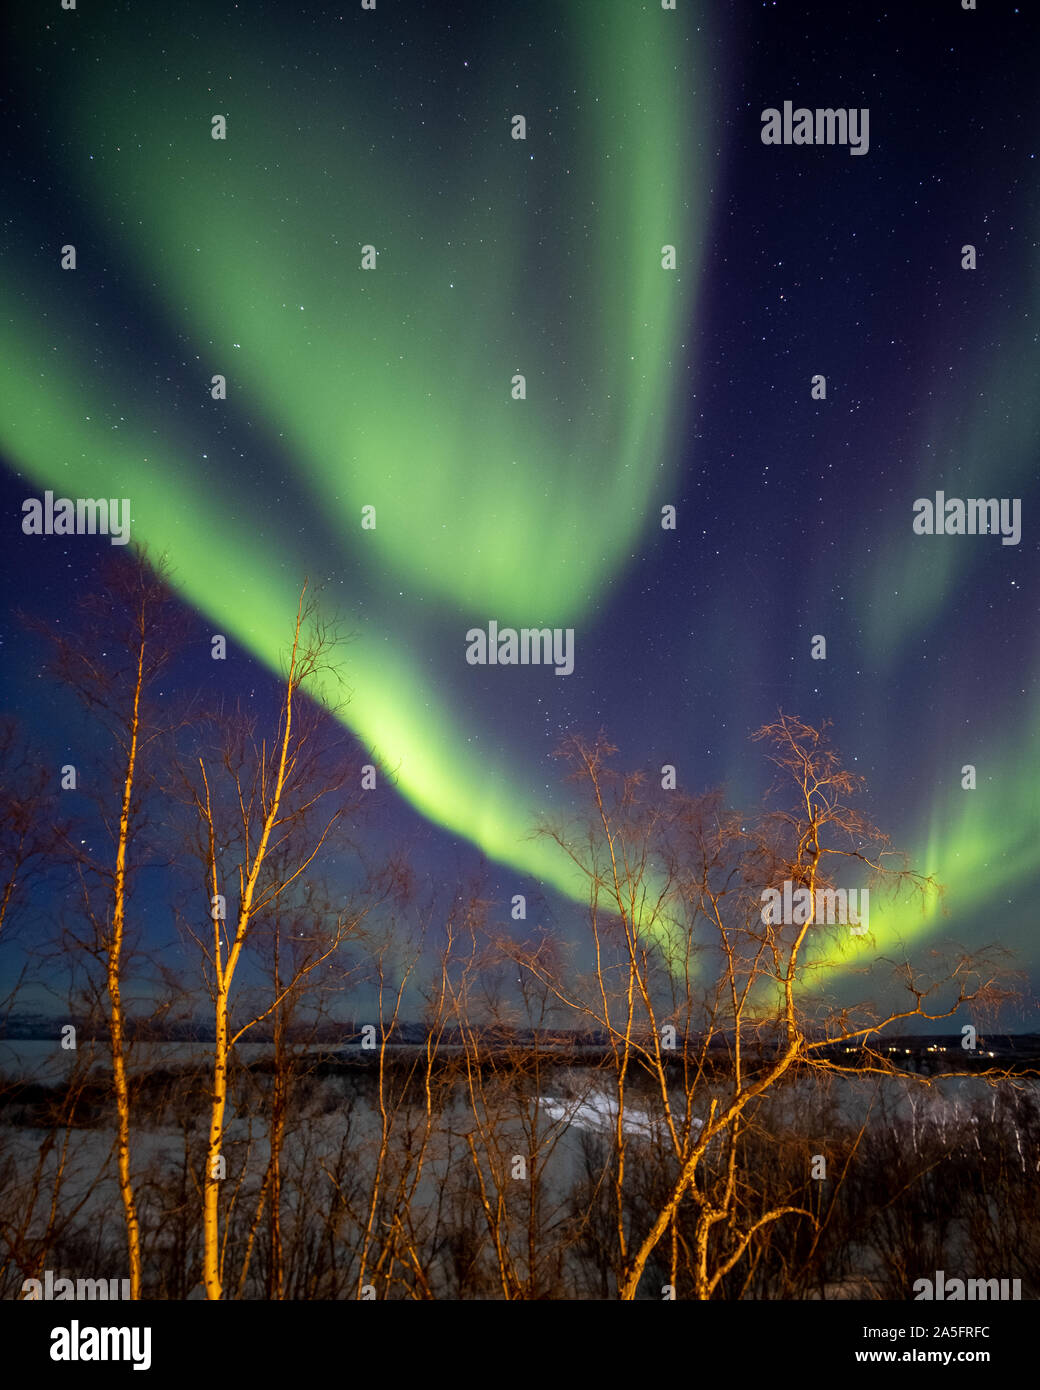 Northern Lights over rural landscape, Abisko National Park, Swedish Lapland, Kiruna, Sweden Stock Photo